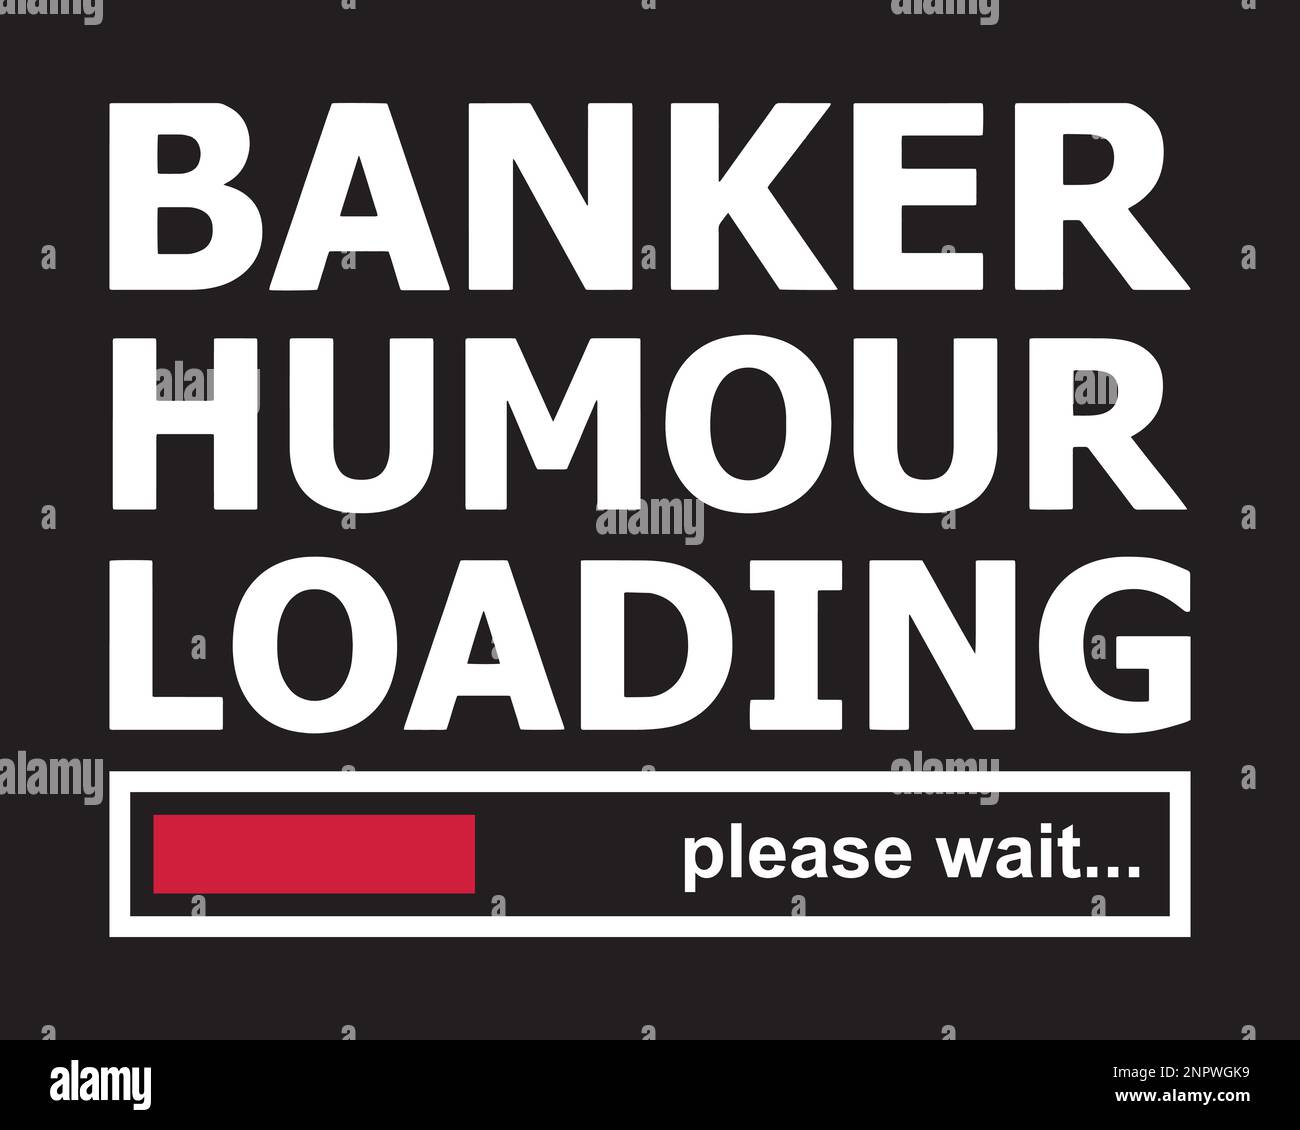 Chargement humour banquier, veuillez patienter. Drôle de banquier disant t-shirt design. Illustration de Vecteur